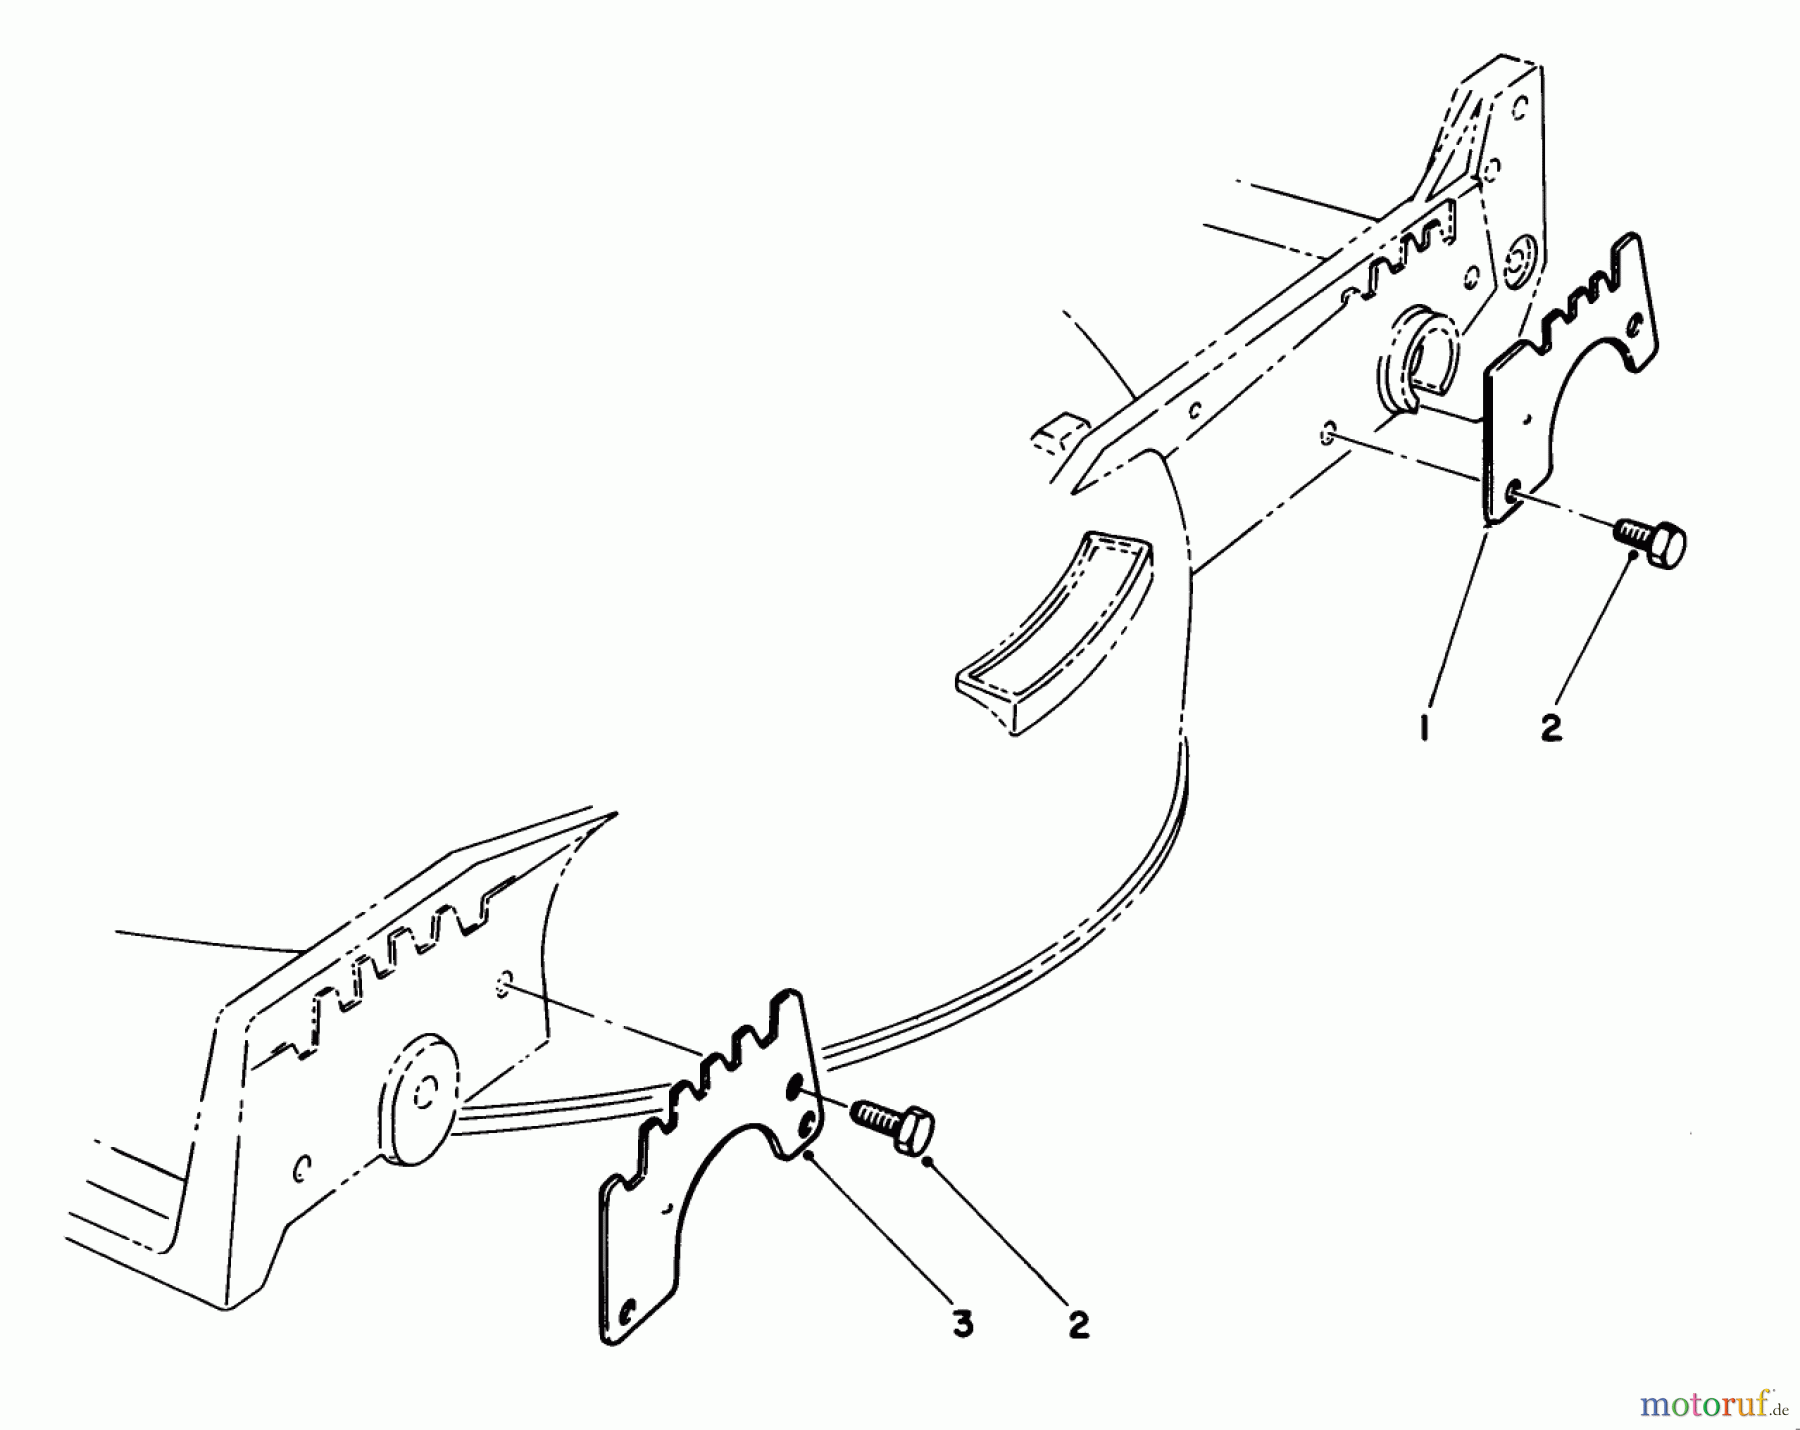  Toro Neu Mowers, Walk-Behind Seite 1 20692C - Toro Lawnmower, 1989 (9000001-9999999) WEAR PLATE KIT NO. 49-4080 (OPTIONAL)